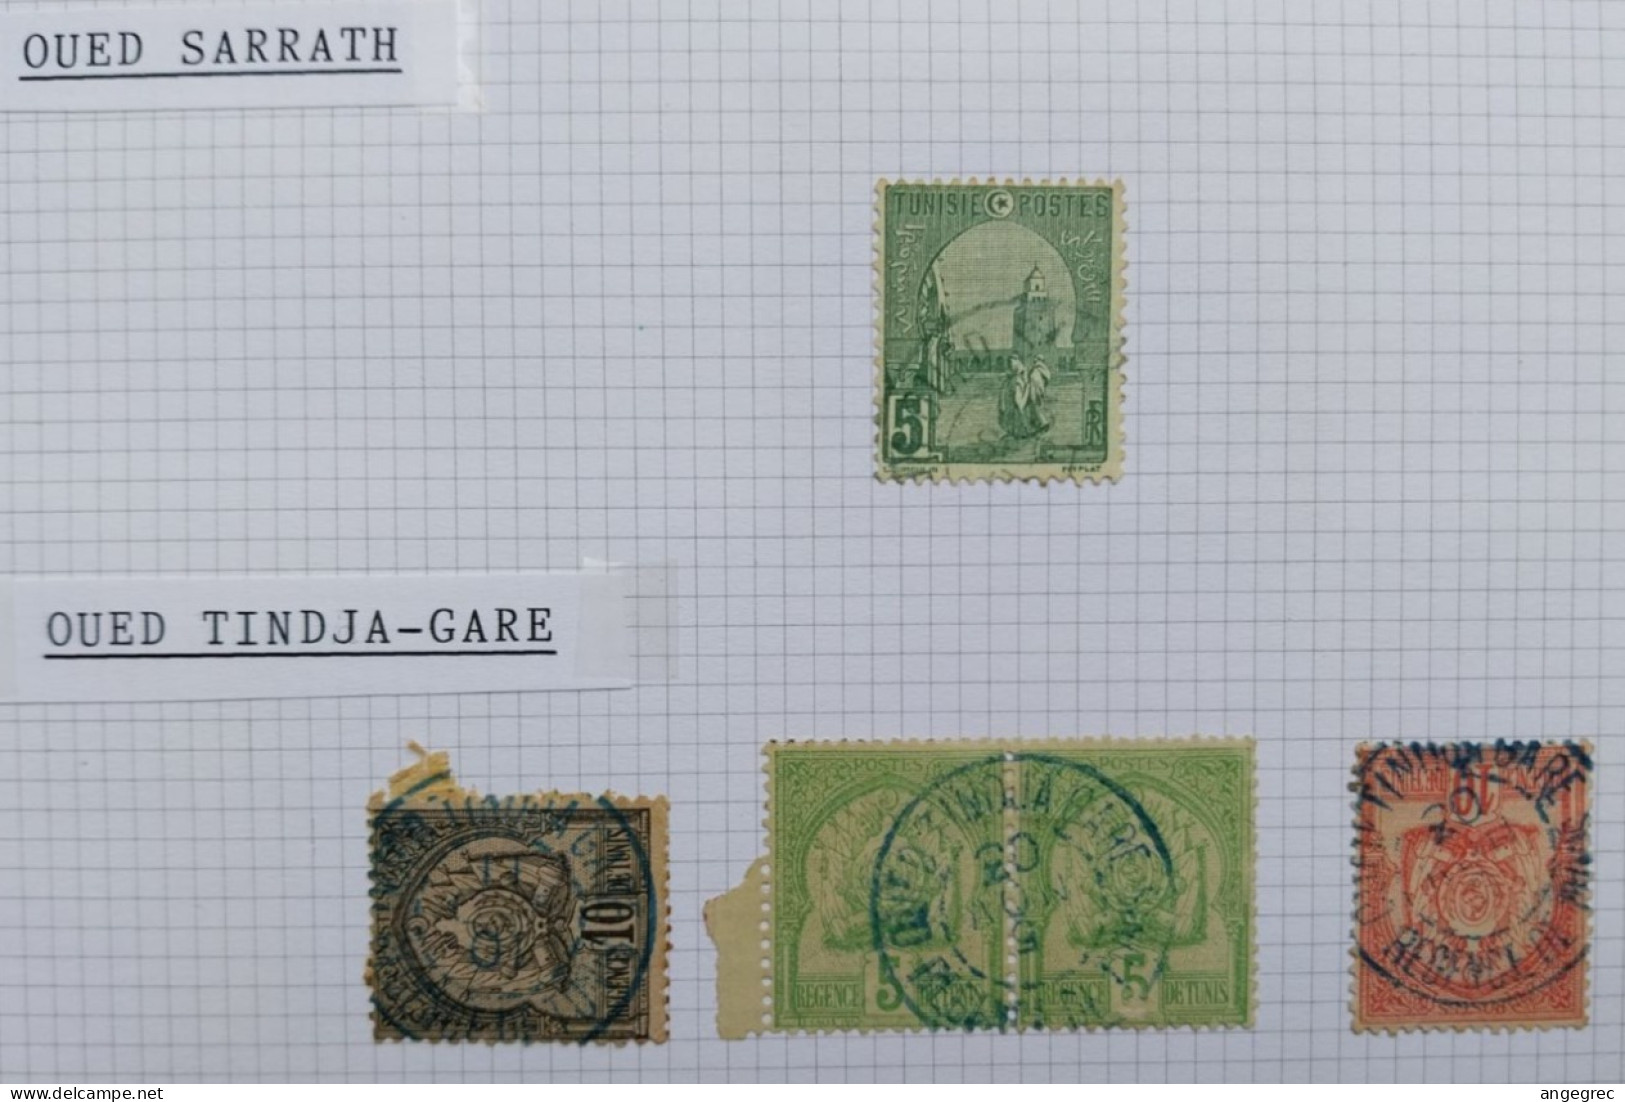 Tunisie Lot Timbre Oblitération Choisies Oued Sarrath, Oued Tindja Gare Cachet Bleu    à Voir - Used Stamps